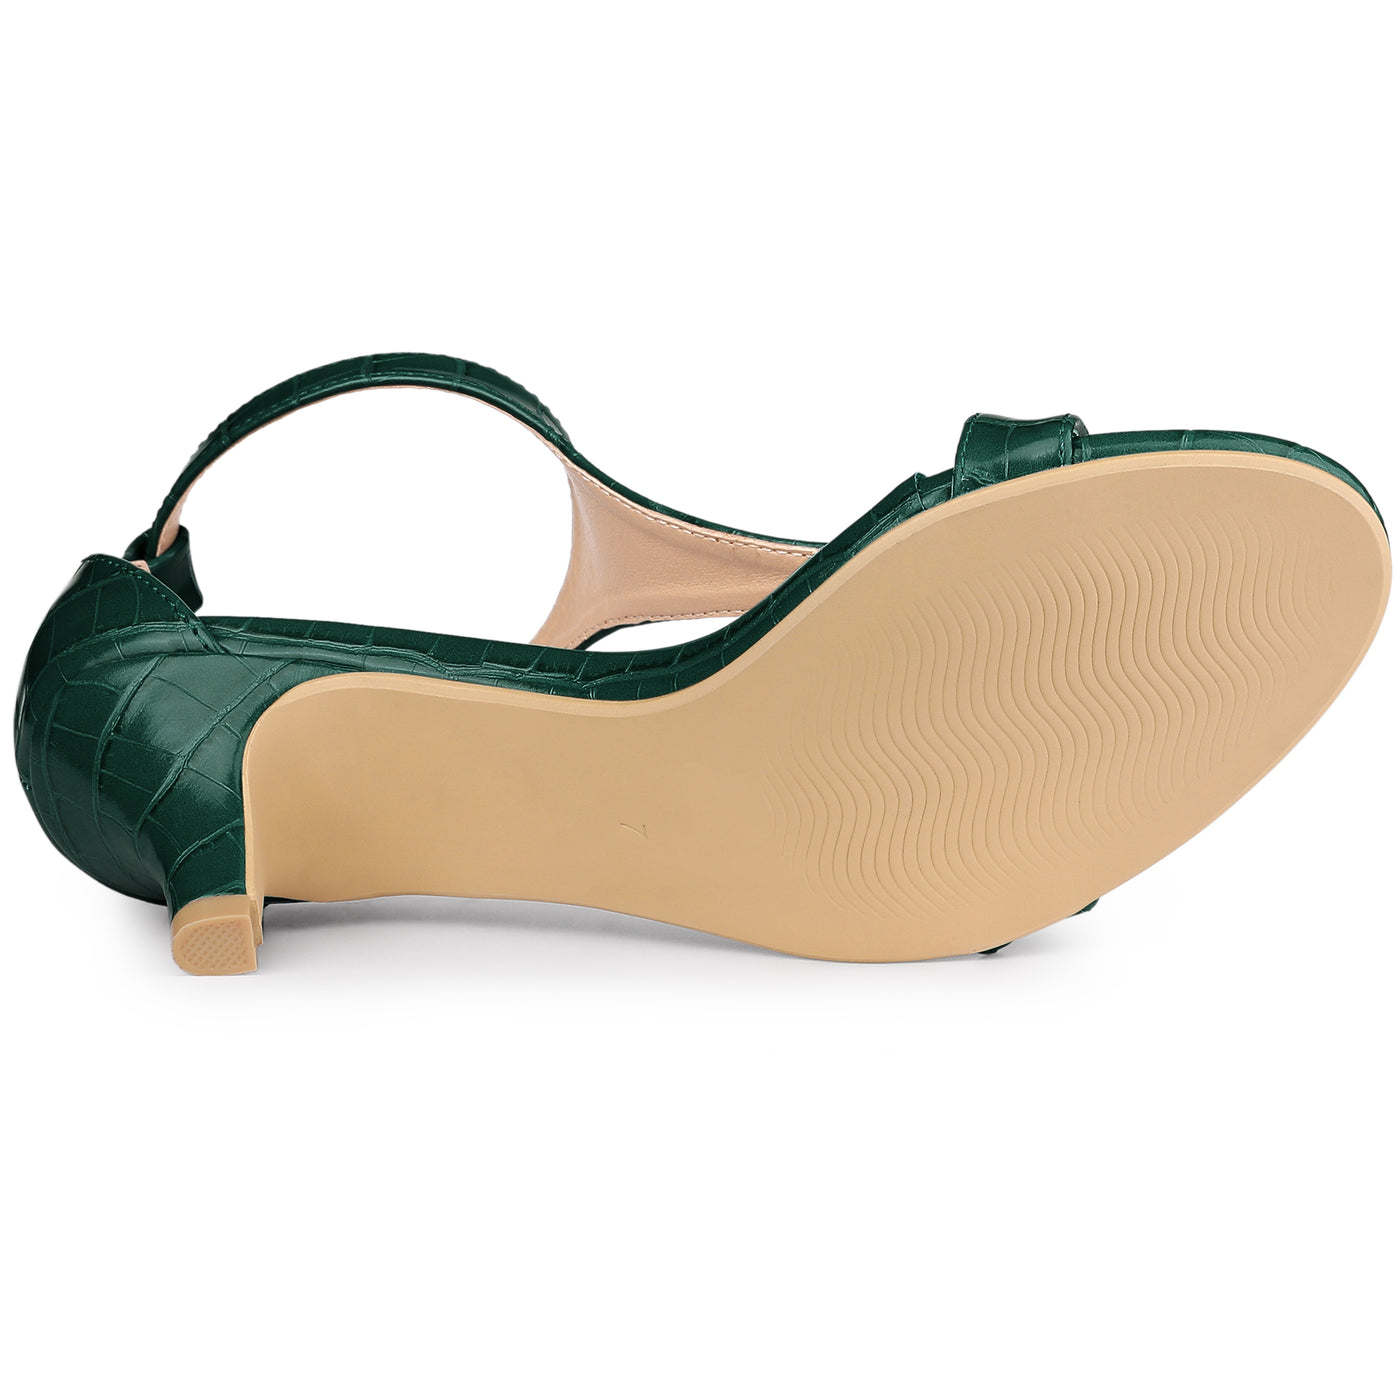 Allegra K Women's T Strap Croc Embossed Kitten Heel Sandals